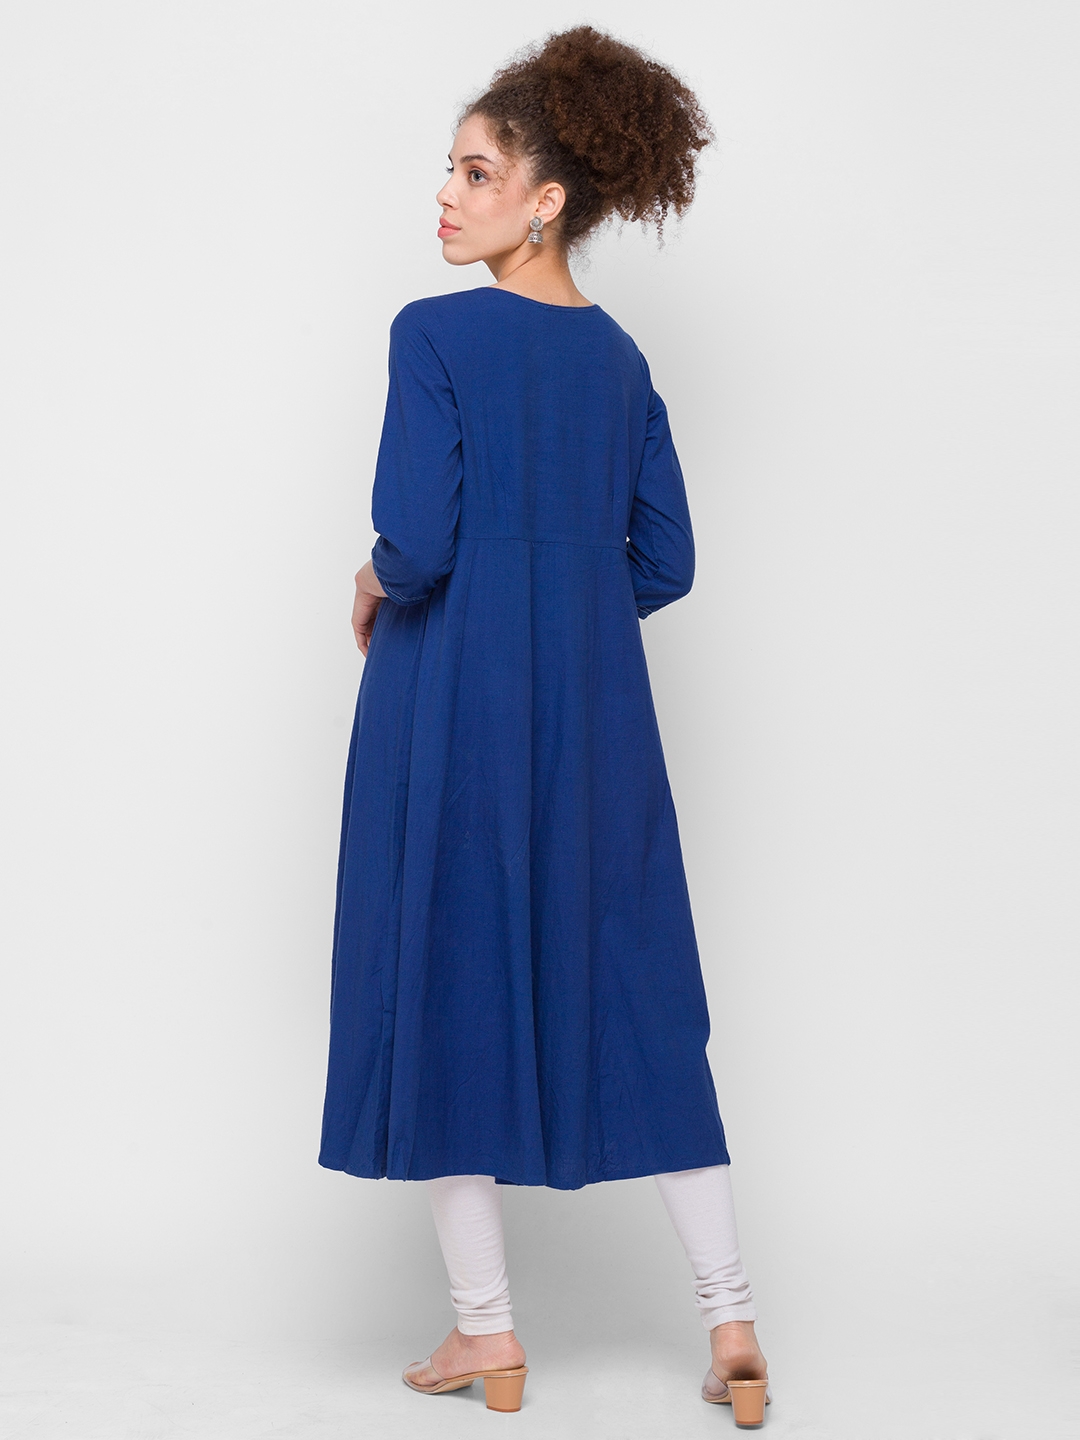 globus | Women's Blue Cotton Embroidered Kurtas 2